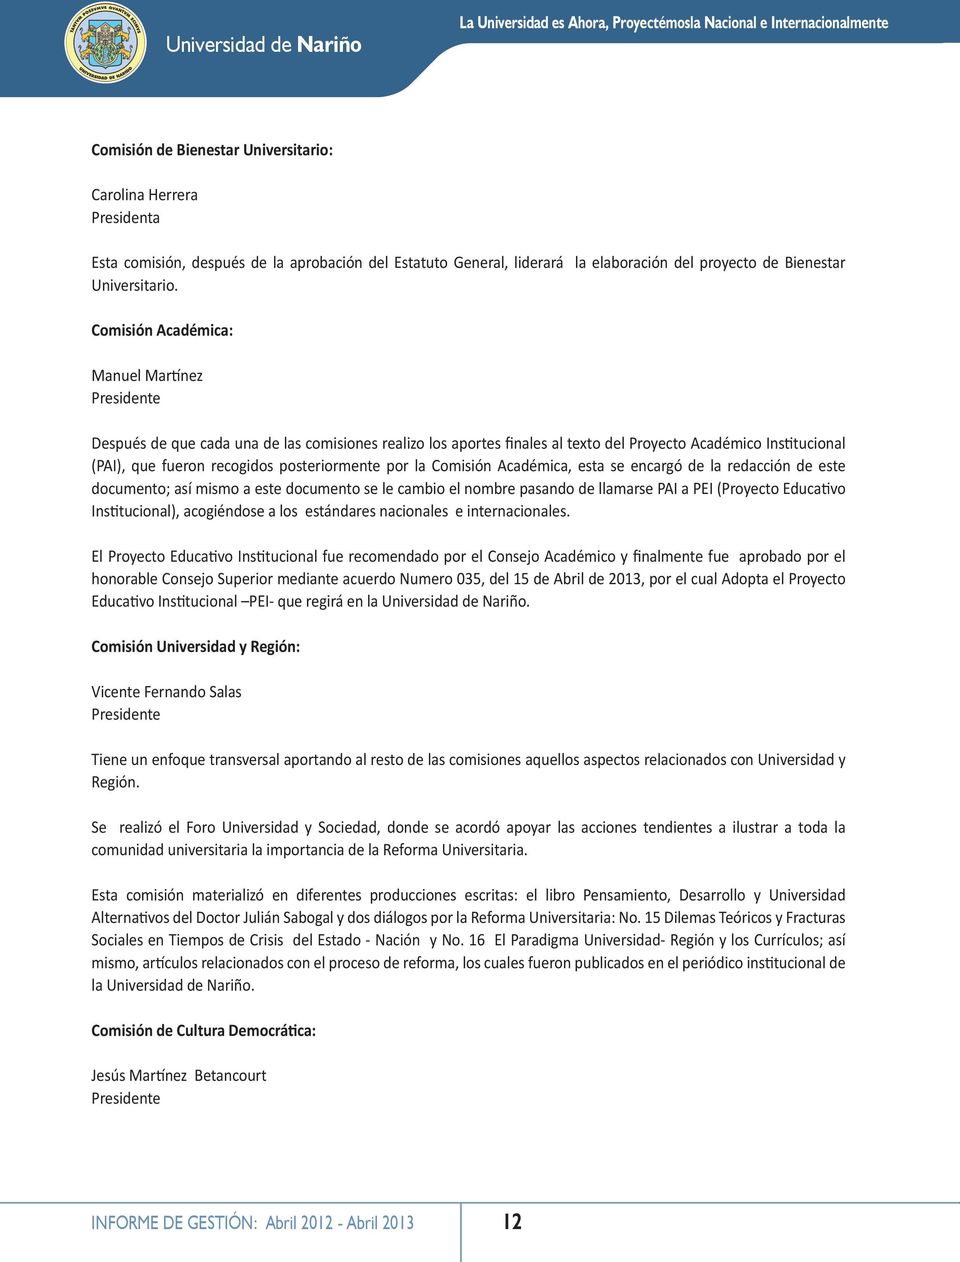 Comisión Académica: Manuel Martínez Presidente Después de que cada una de las comisiones realizo los aportes finales al texto del Proyecto Académico Institucional (PAI), que fueron recogidos